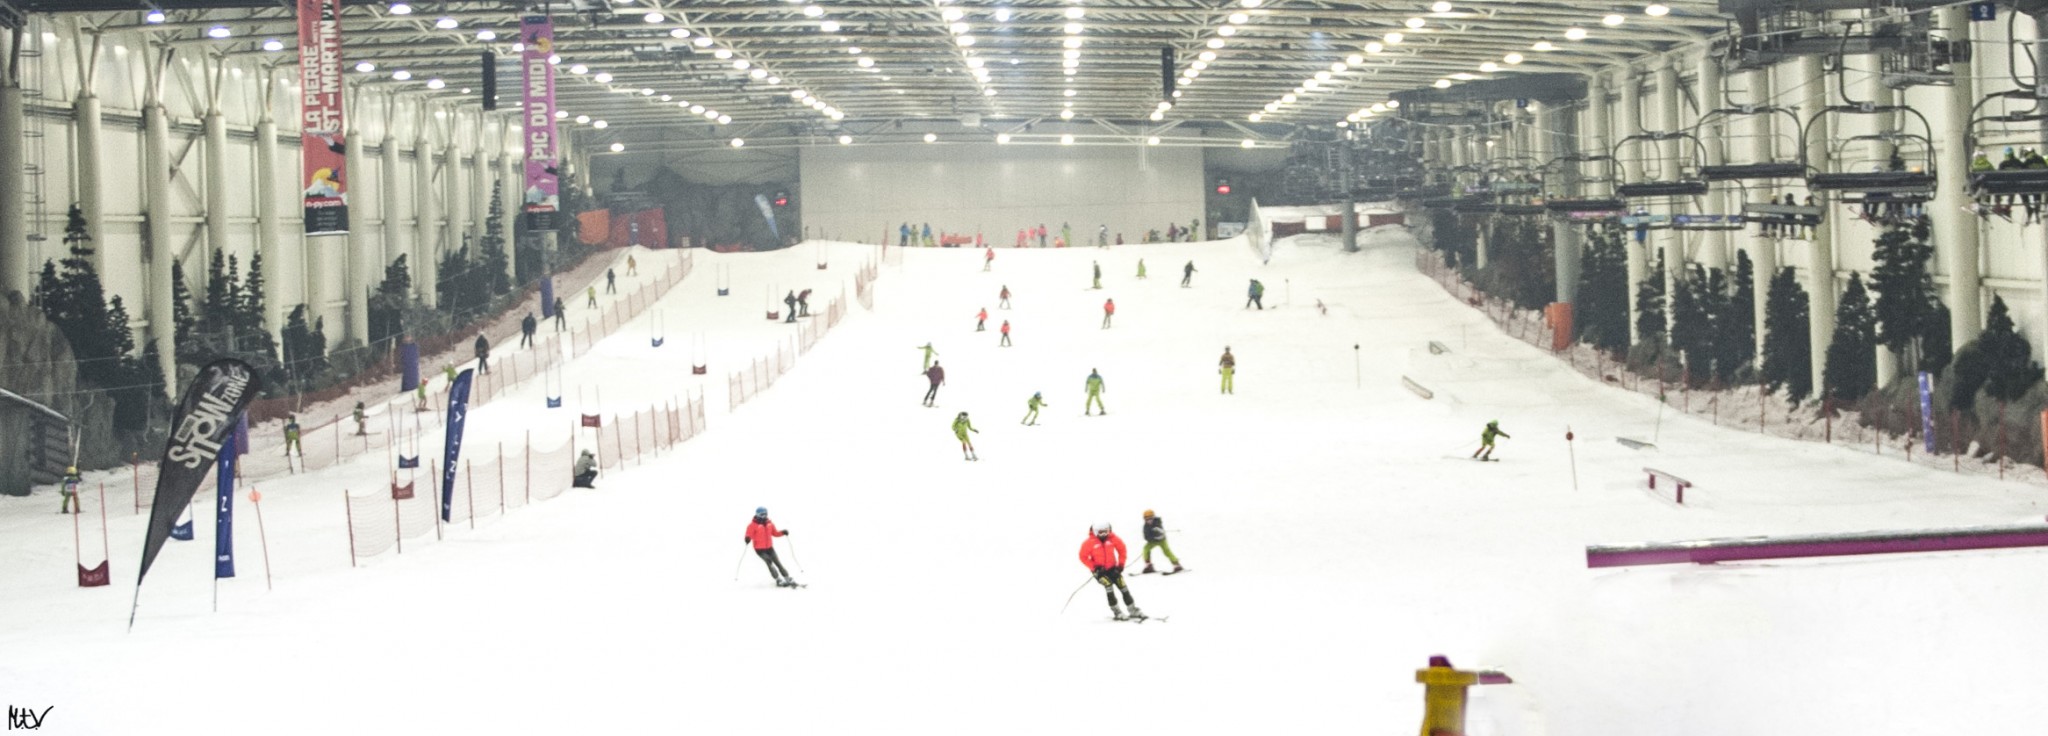 La pista de Madrid SnowZone es homologada por la RFEDI y por la FMDI para celebrar competiciones de esquí alpino